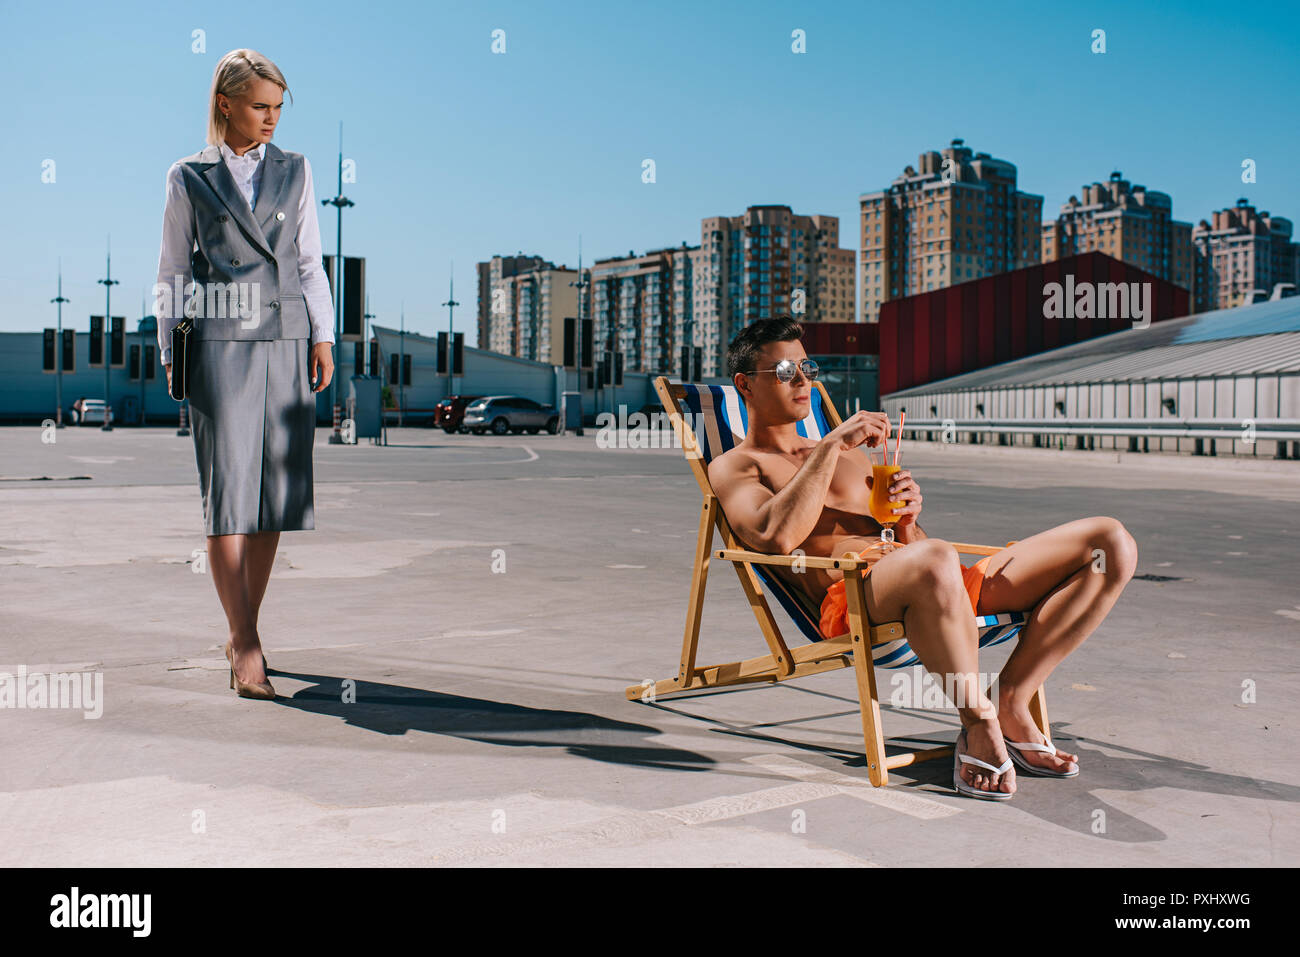 Hübscher junger Mann relaxen im Liegestuhl, während seine Frau Chef im Anzug neben ihm auf dem Parkplatz Stockfoto